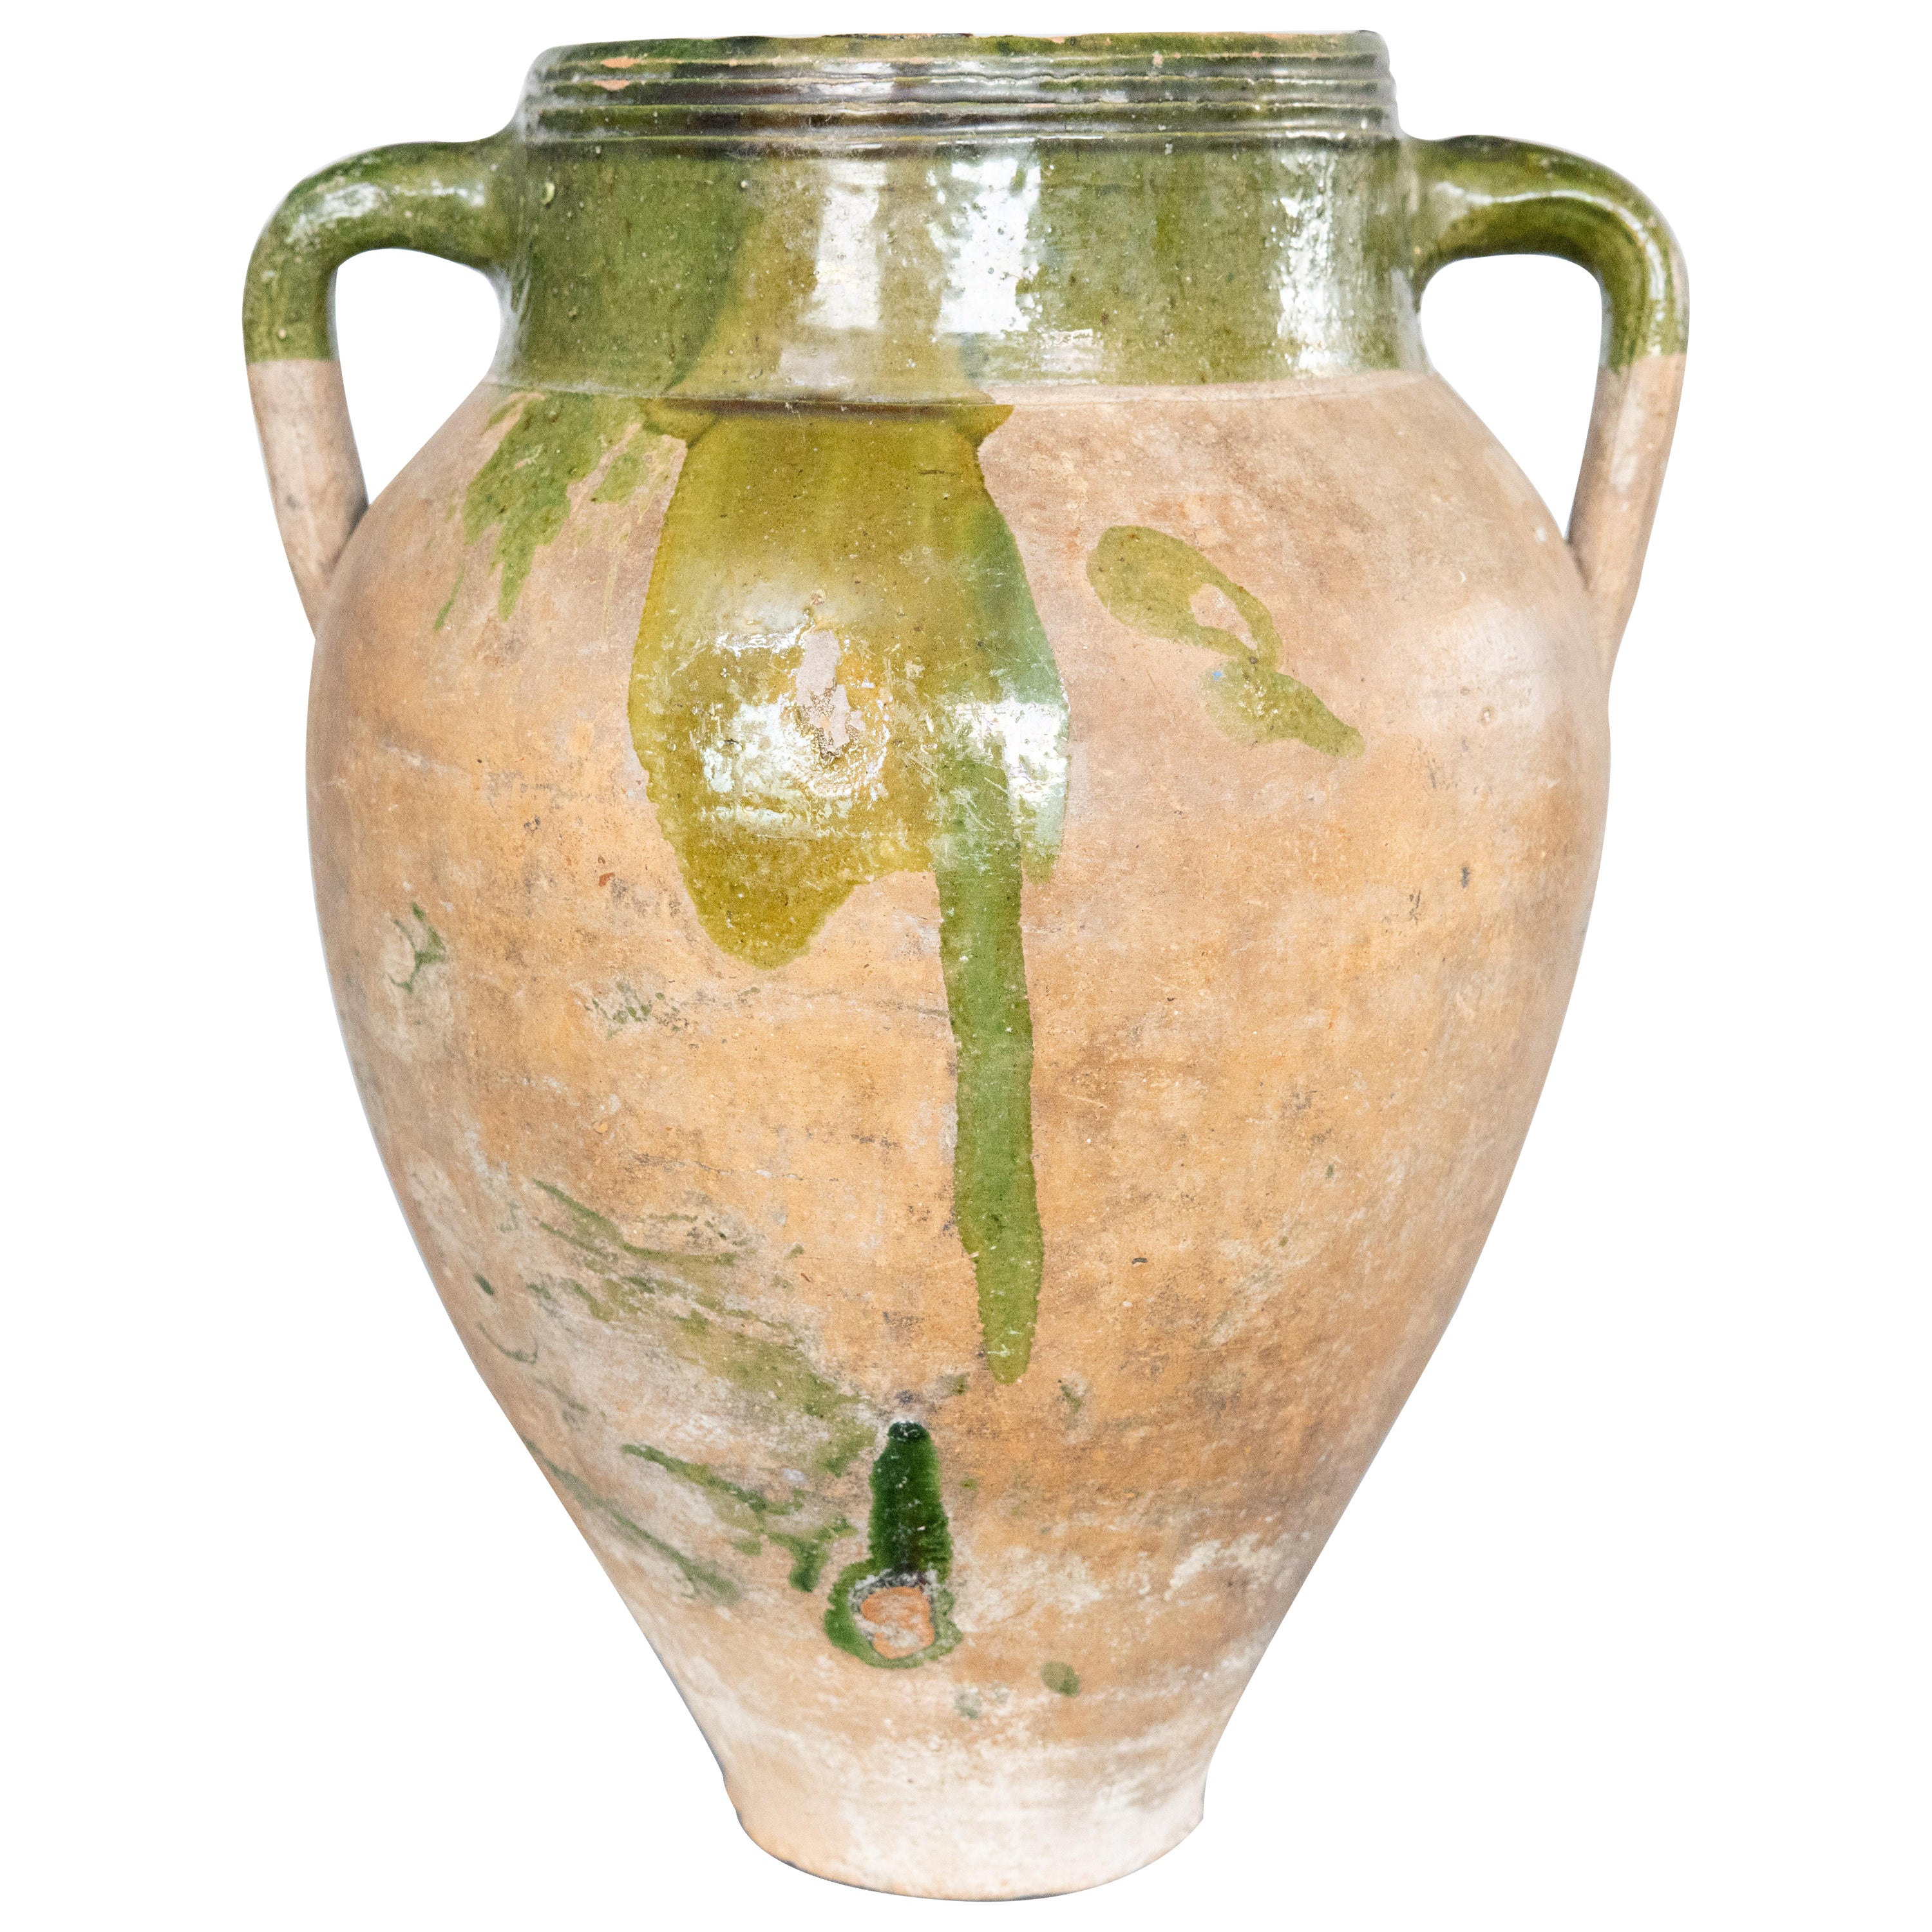 Vase jarre à olives en terre cuite vernissée verte du 19e siècle